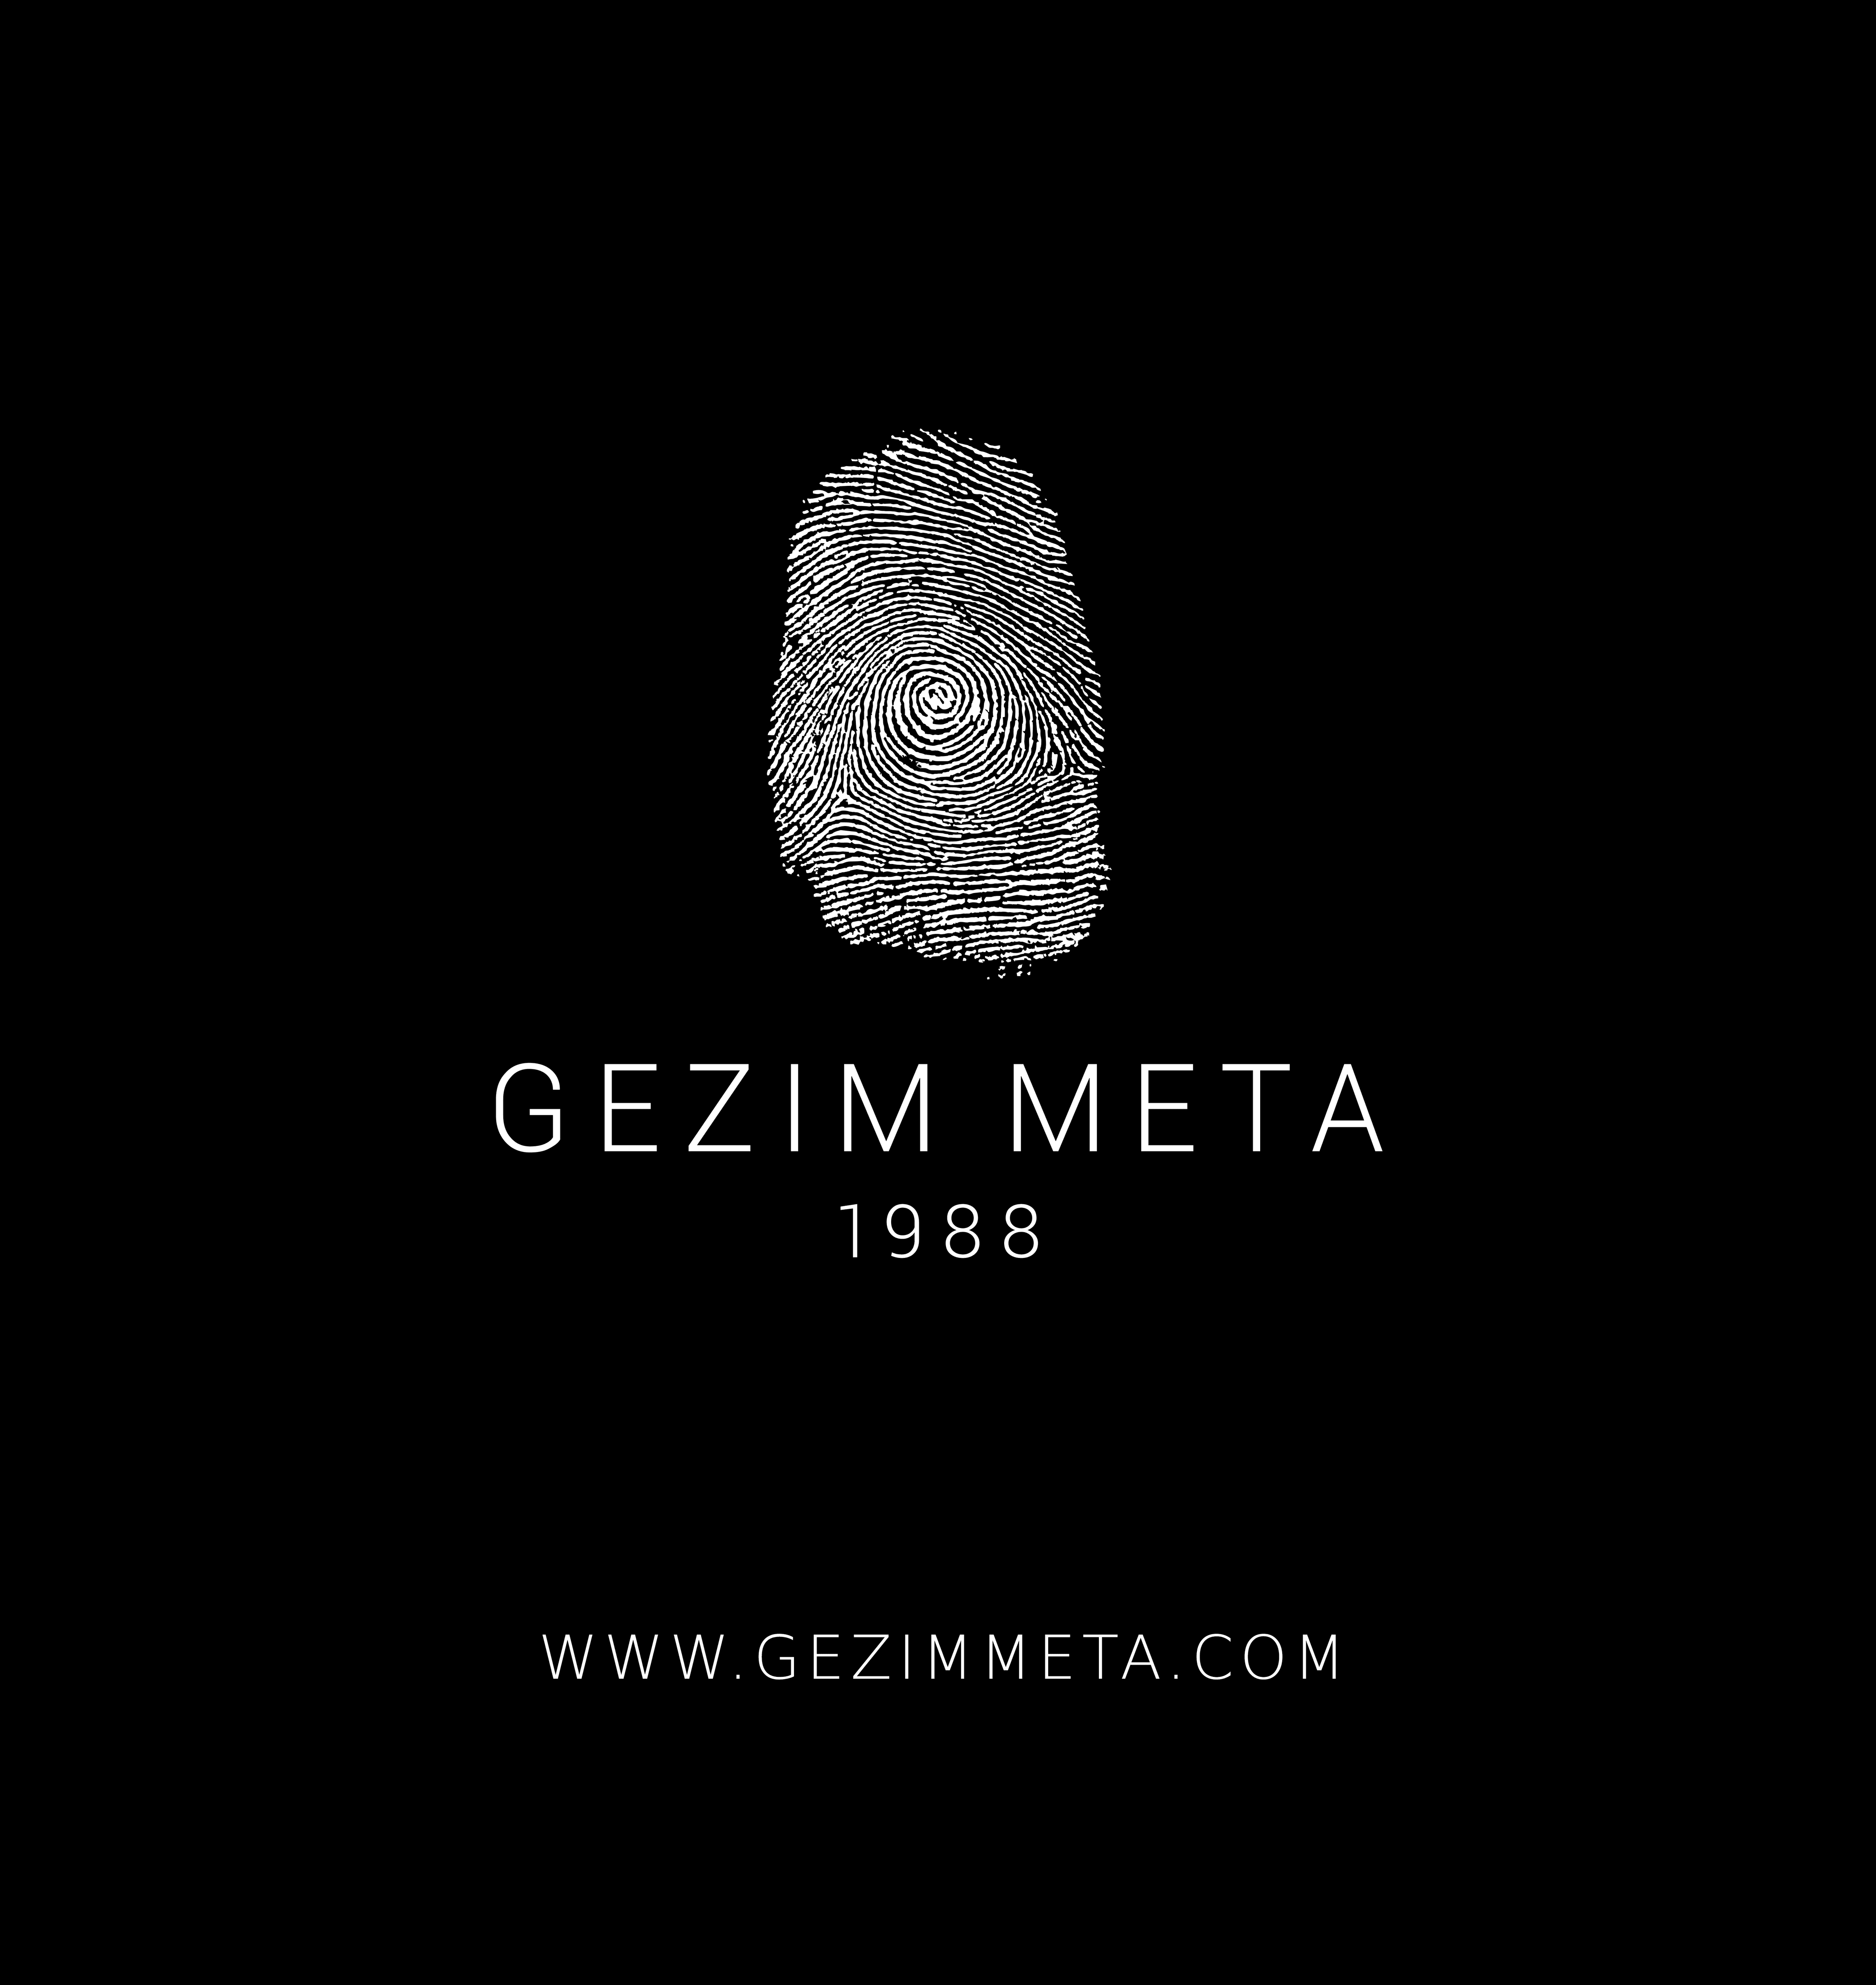 gezimmeta banner